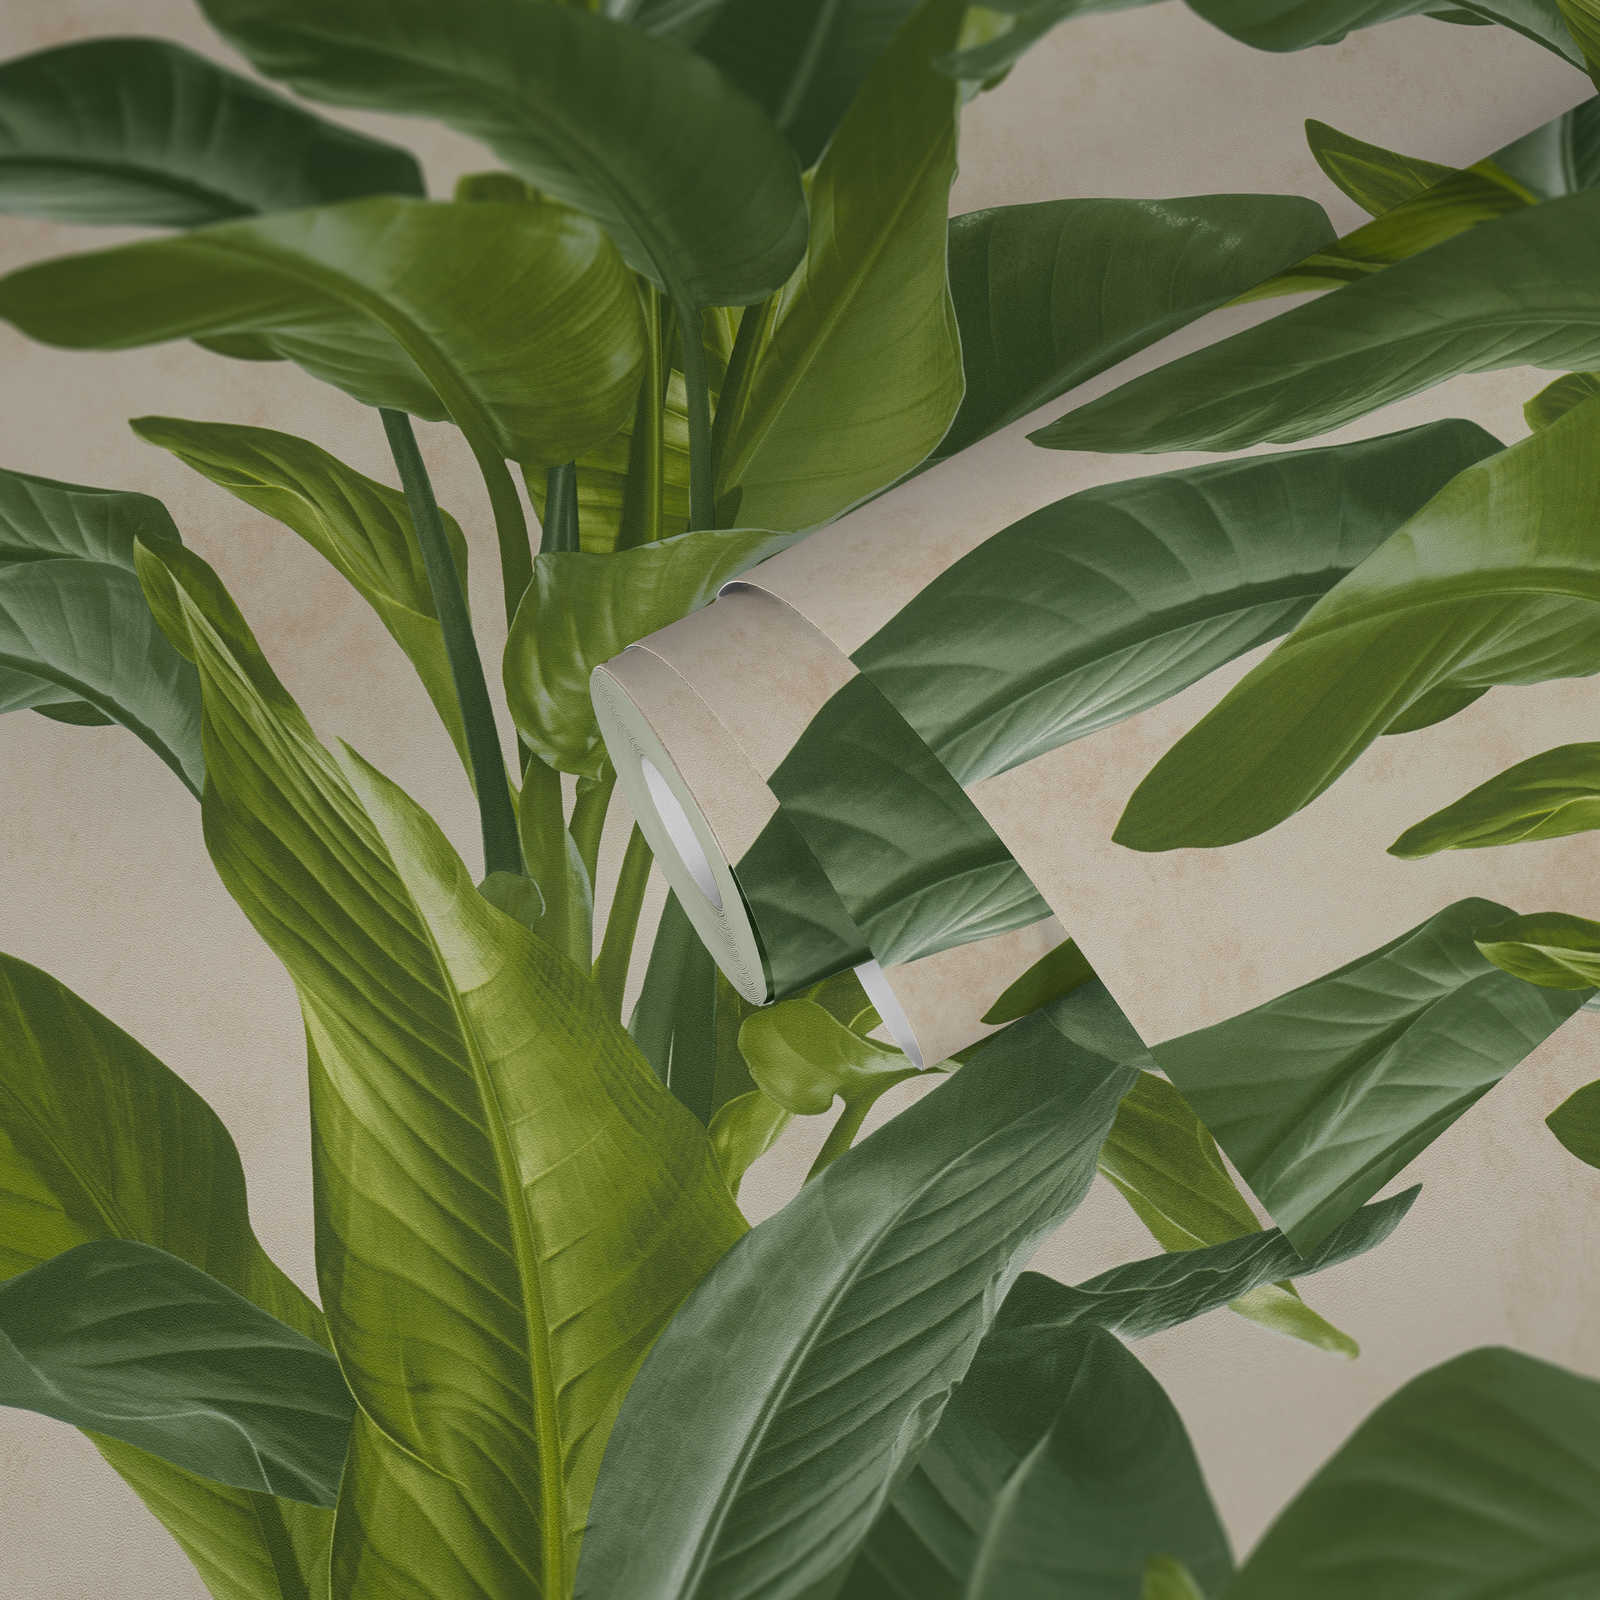             Papel pintado no tejido con diseño moderno de hojas - crema, verde
        